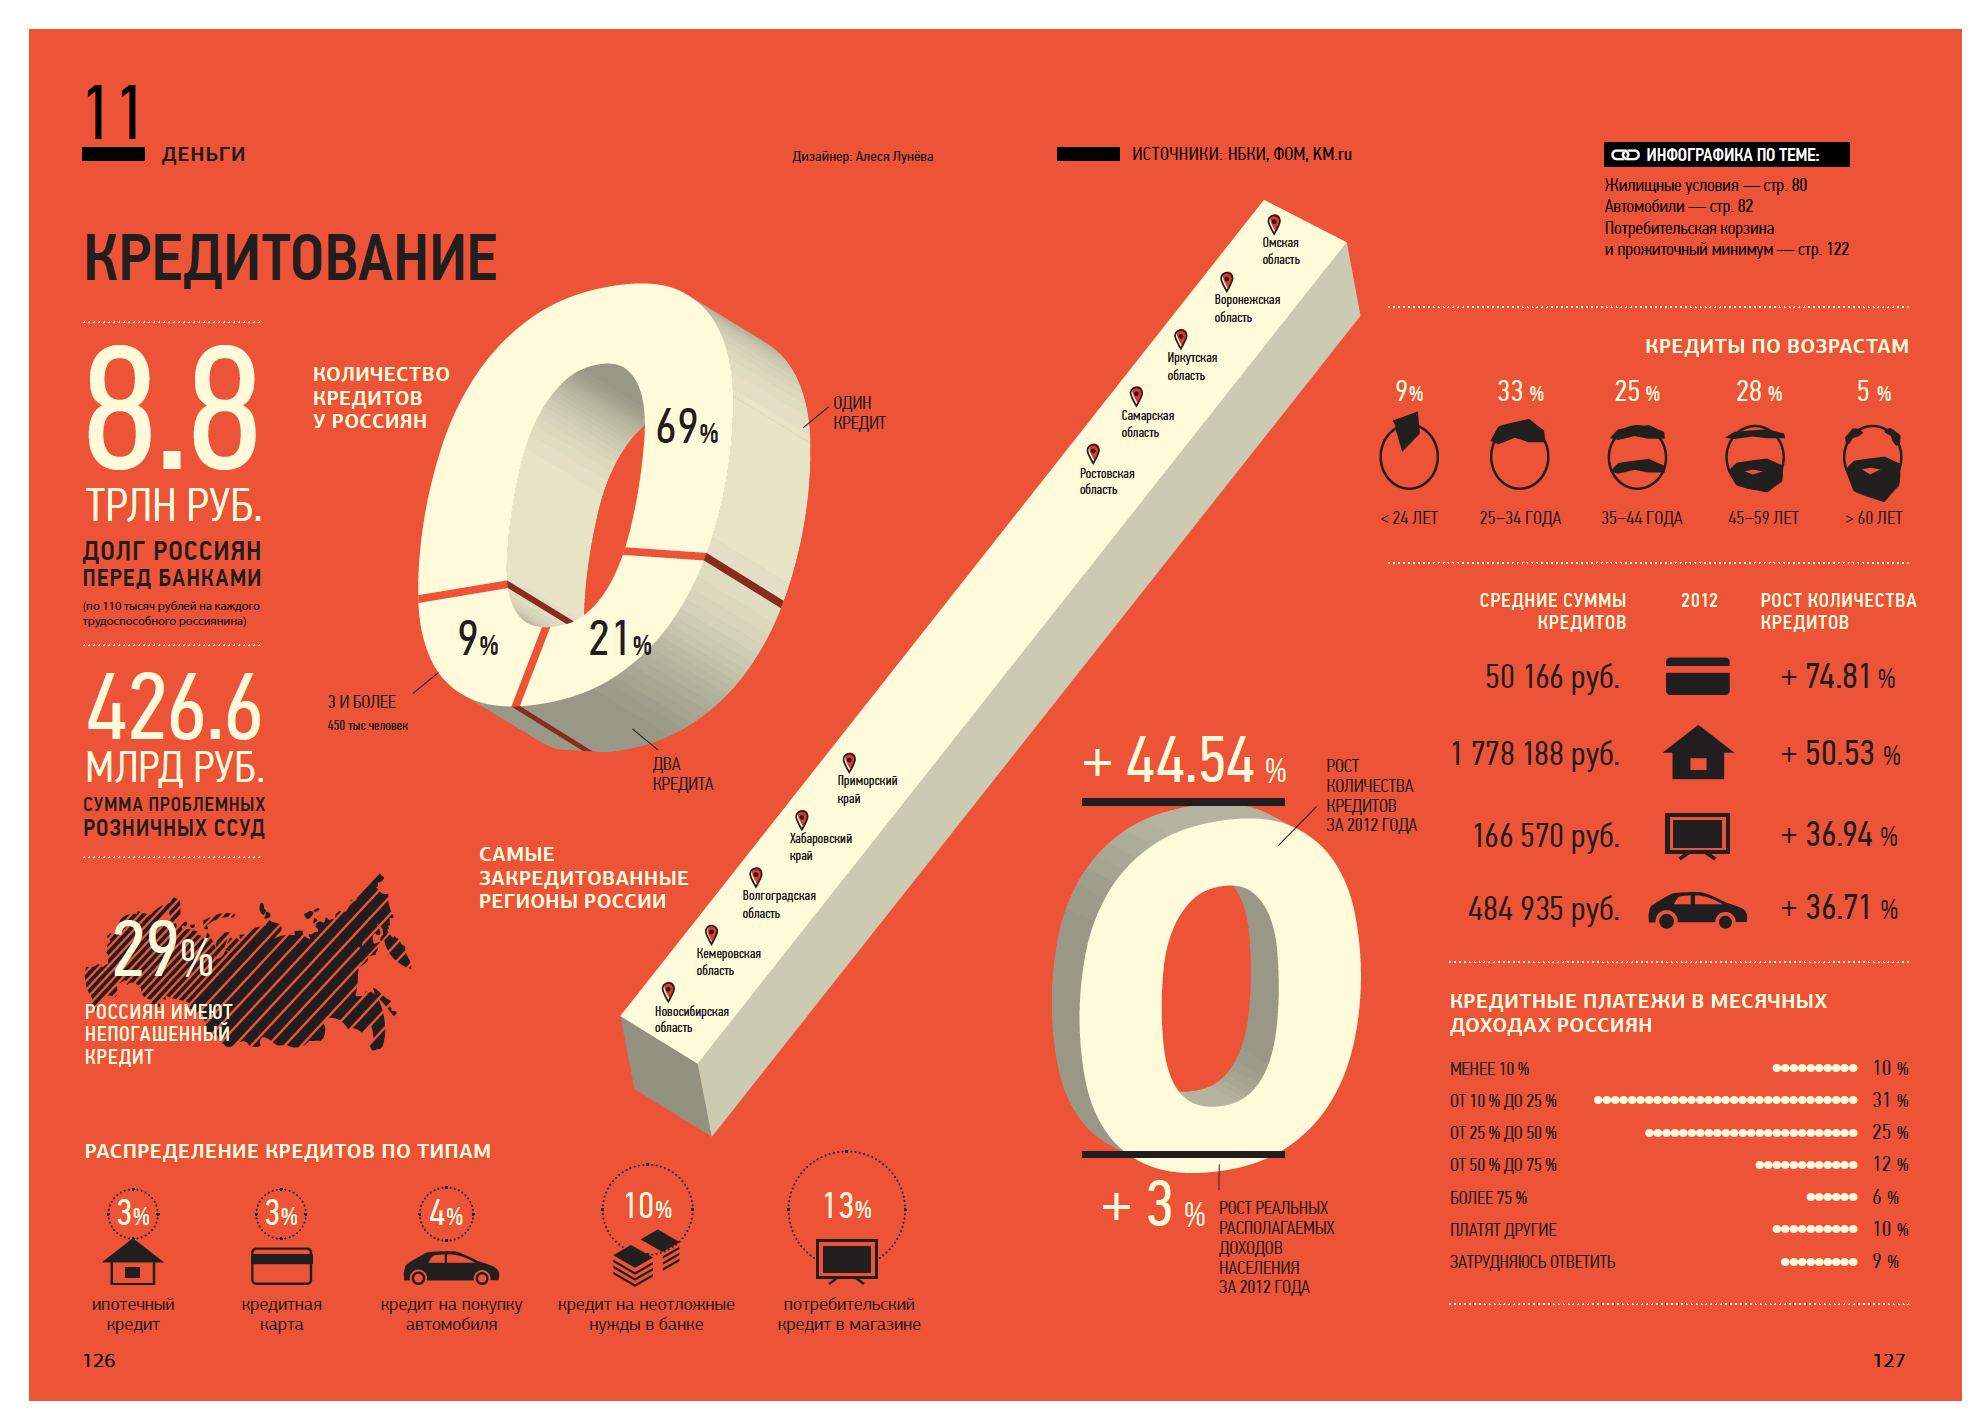 Утопая в цифрах. Инфографика цифры. Статистика в цифрах. Россия в цифрах. Инфографика цифры и факты.